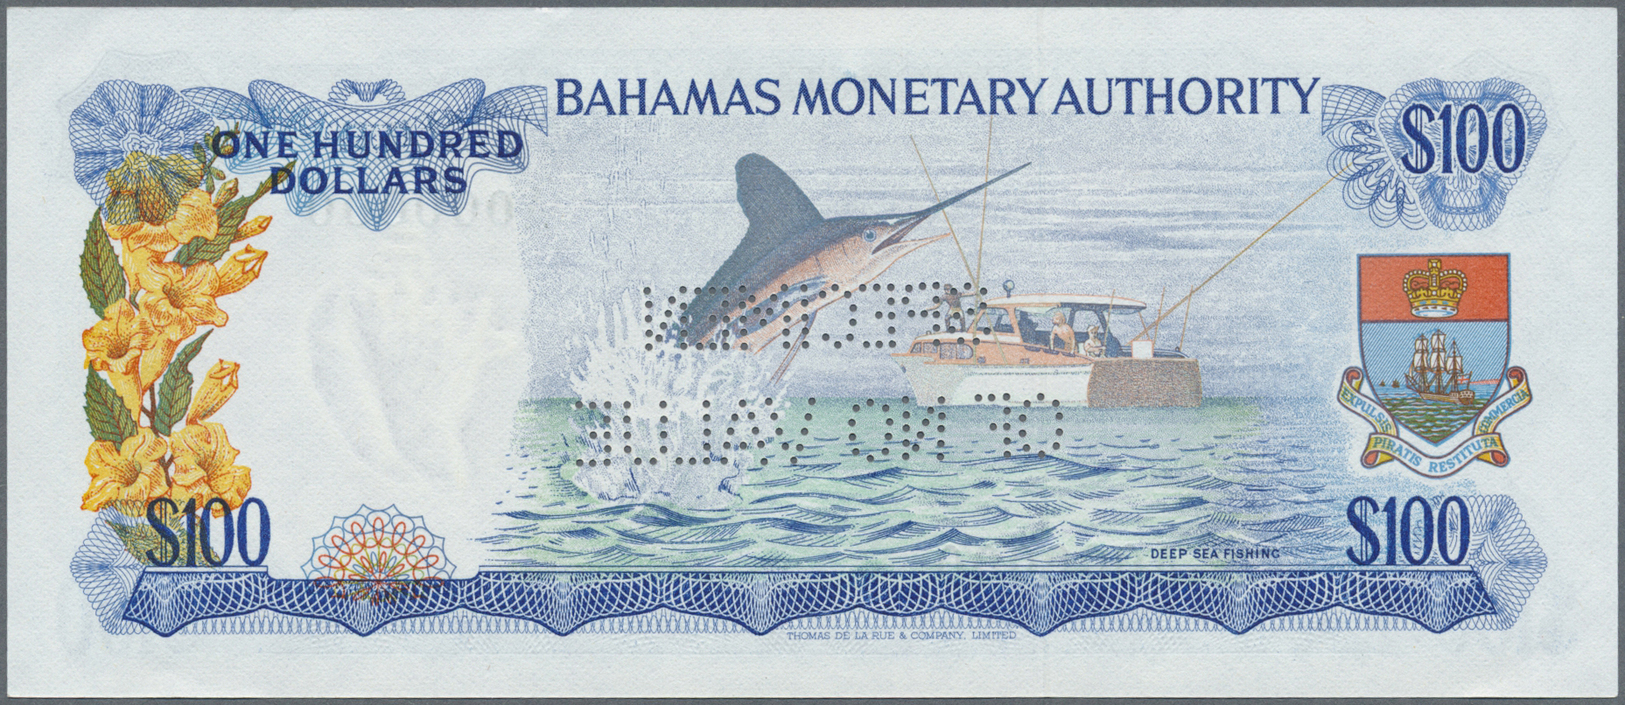 00225 Bahamas: Bahamas Monetary Authority 100 Dollars L.1986 SPECIMEN, P.33s With Perforation "Specimen Of No Value" At - Bahamas